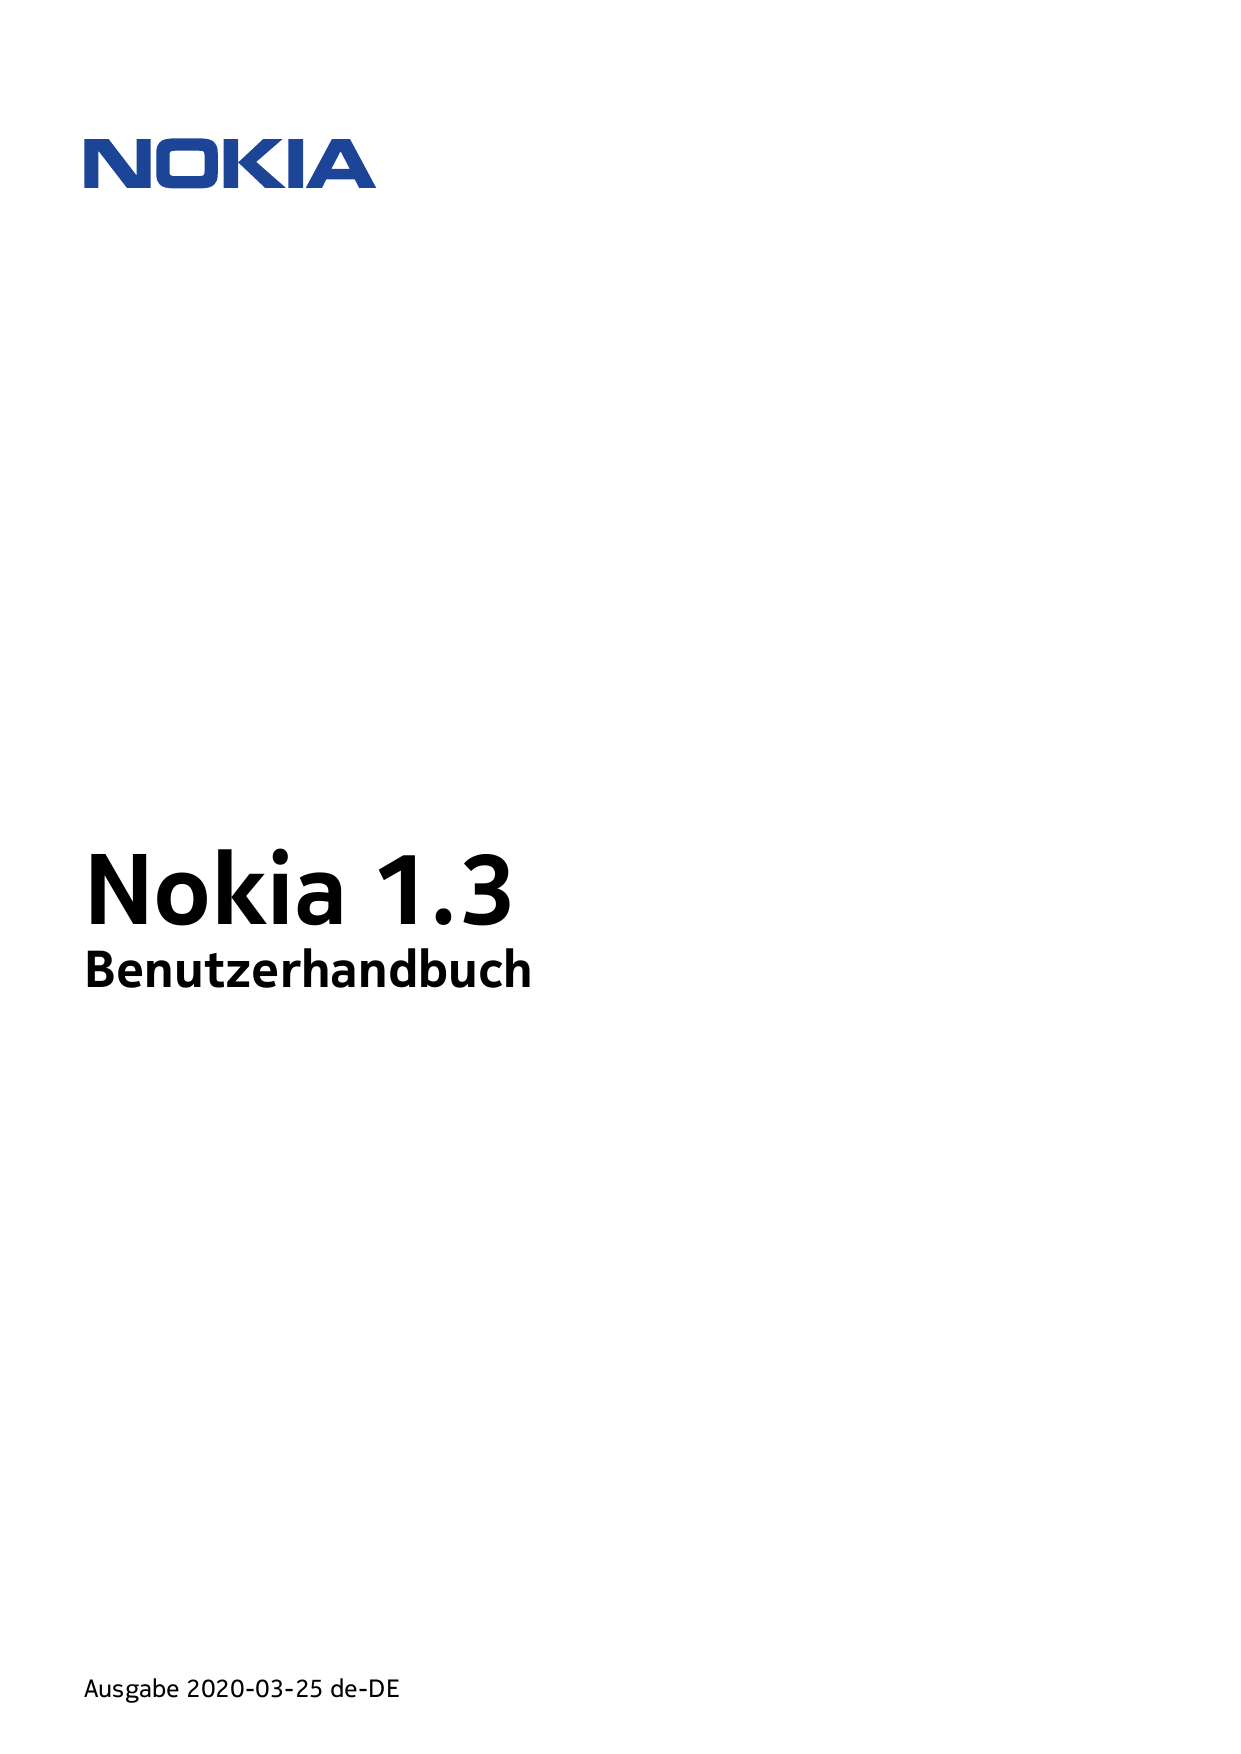 Nokia 1.3BenutzerhandbuchAusgabe 2020-03-25 de-DE